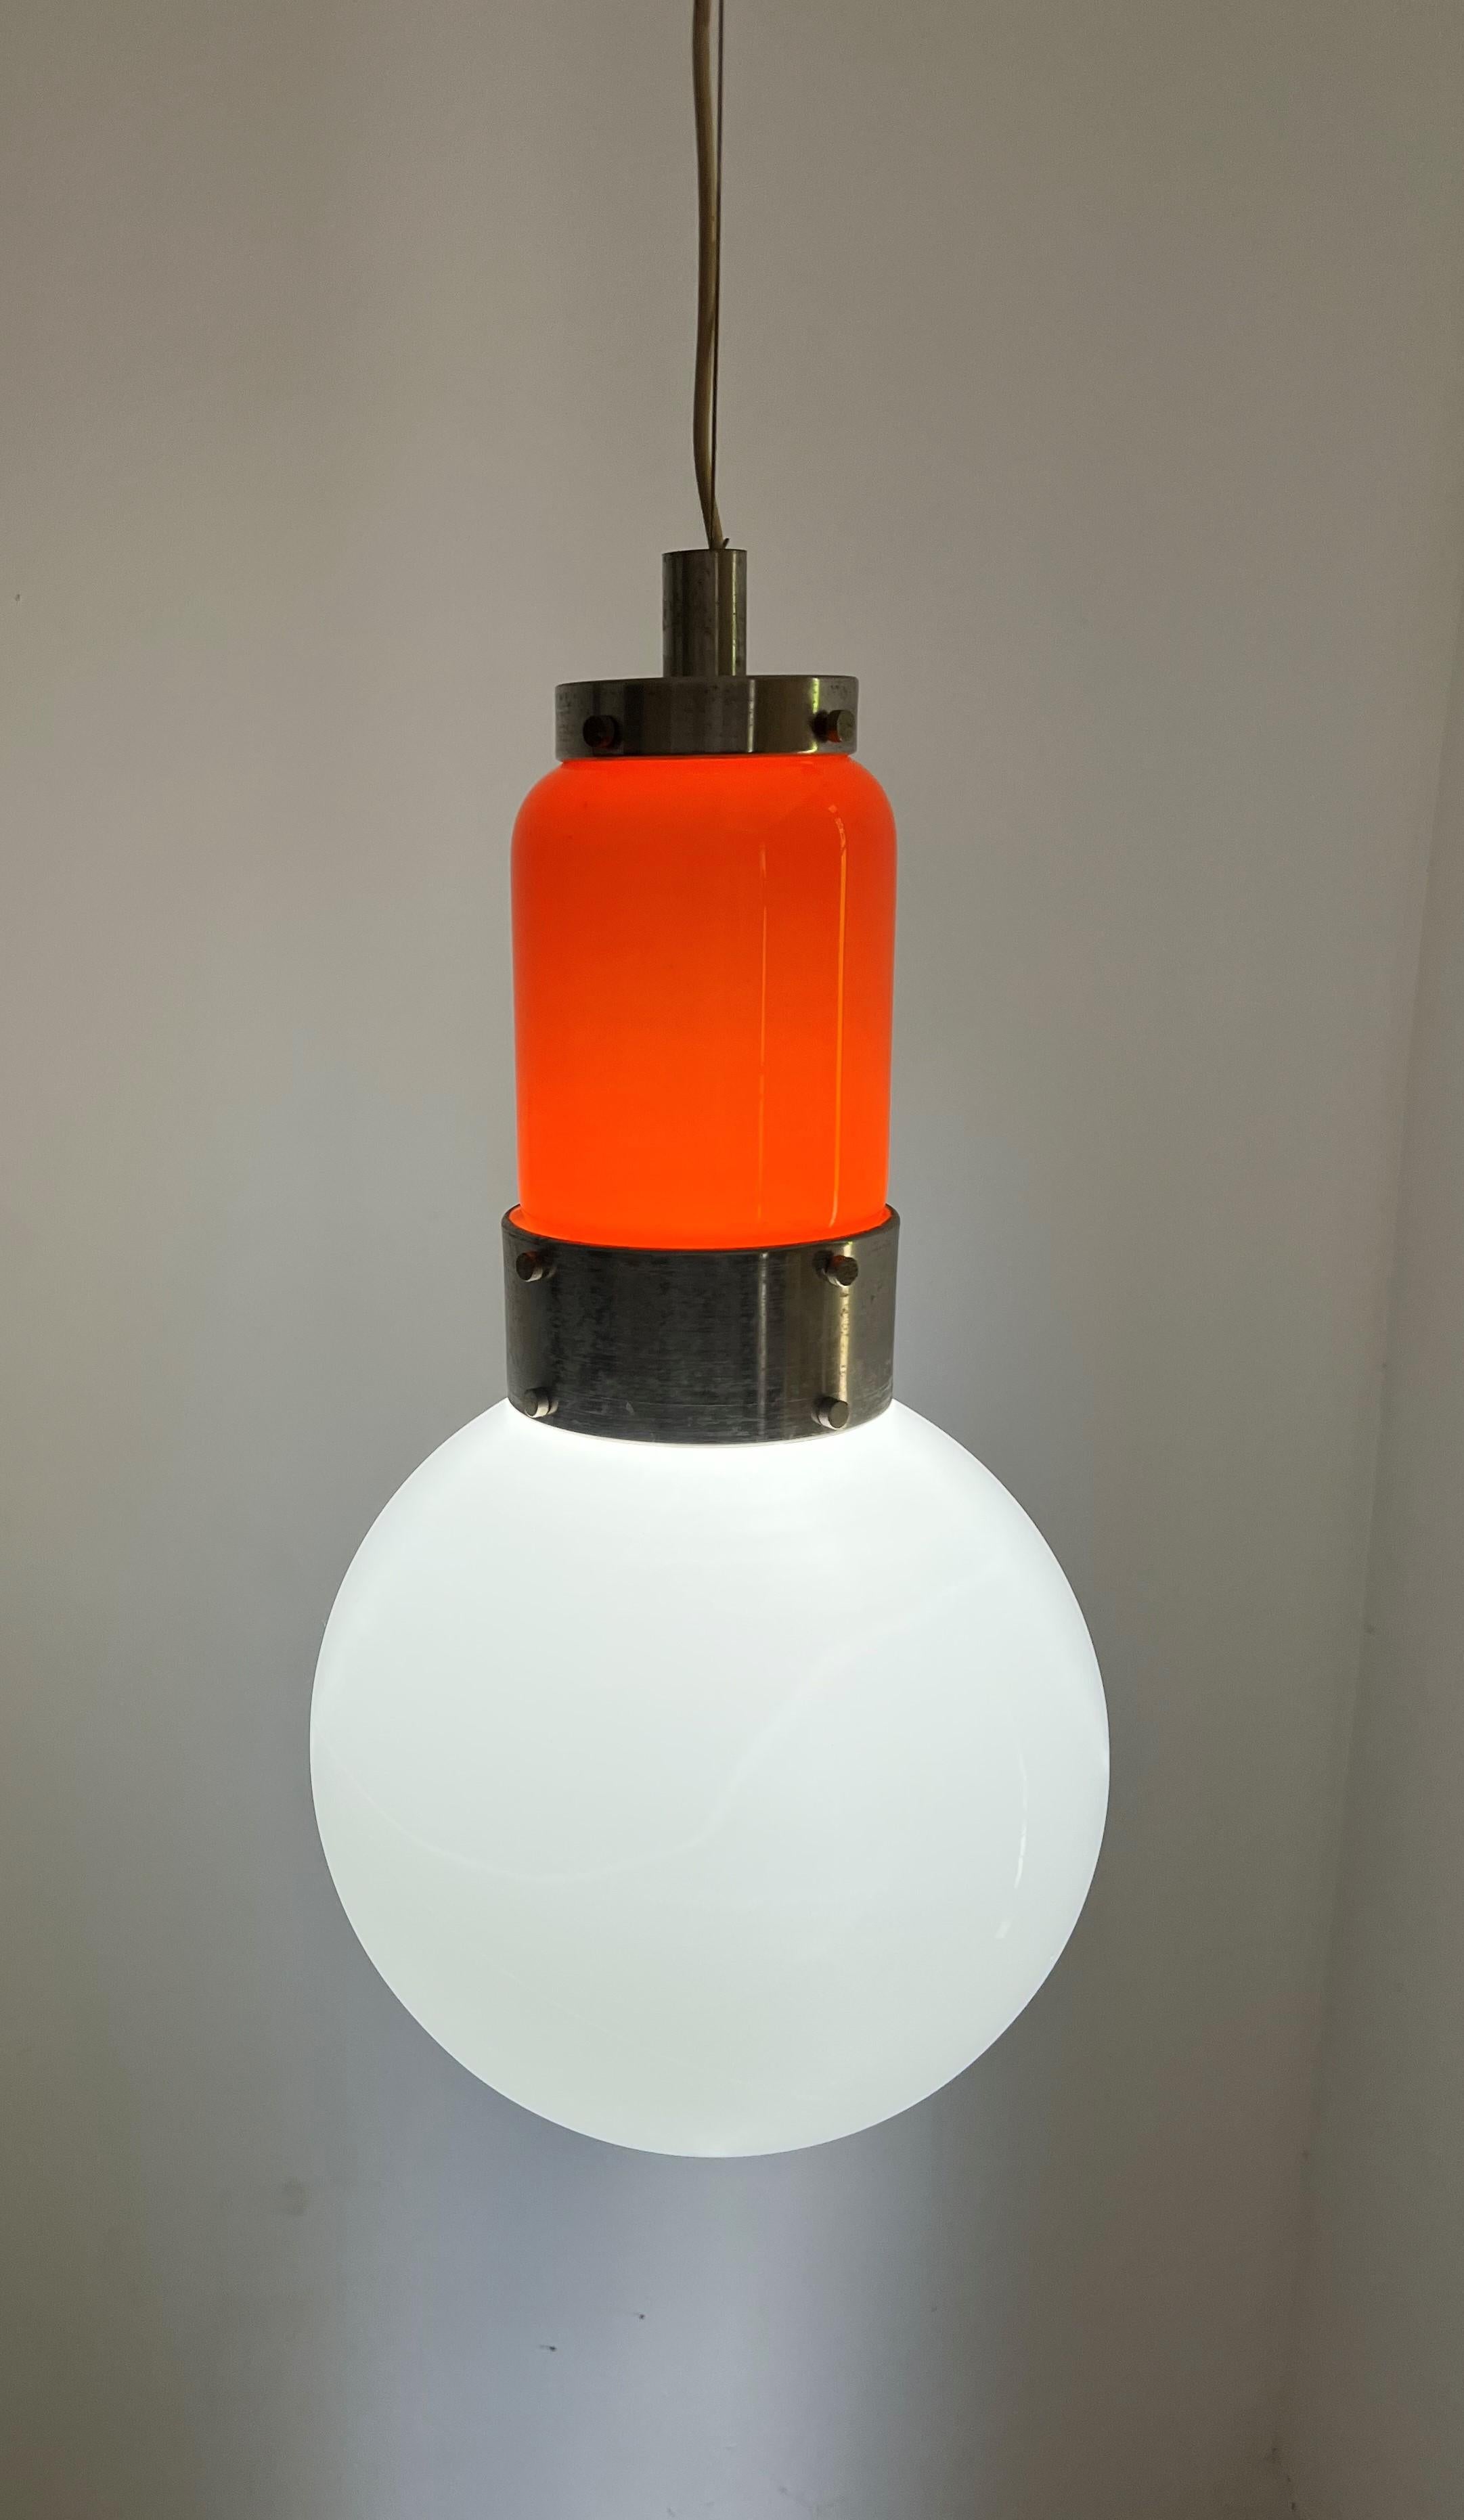 Lampe suspendue de l'ère spatiale par Carlo Nason pour NO AGE, vers 1970.
Cette lampe se compose de 2 pièces distinctes en verre opalin orange et blanc.
La lampe contient une ampoule e 27 et a été récemment recâblée.
La chute de ce lustre peut